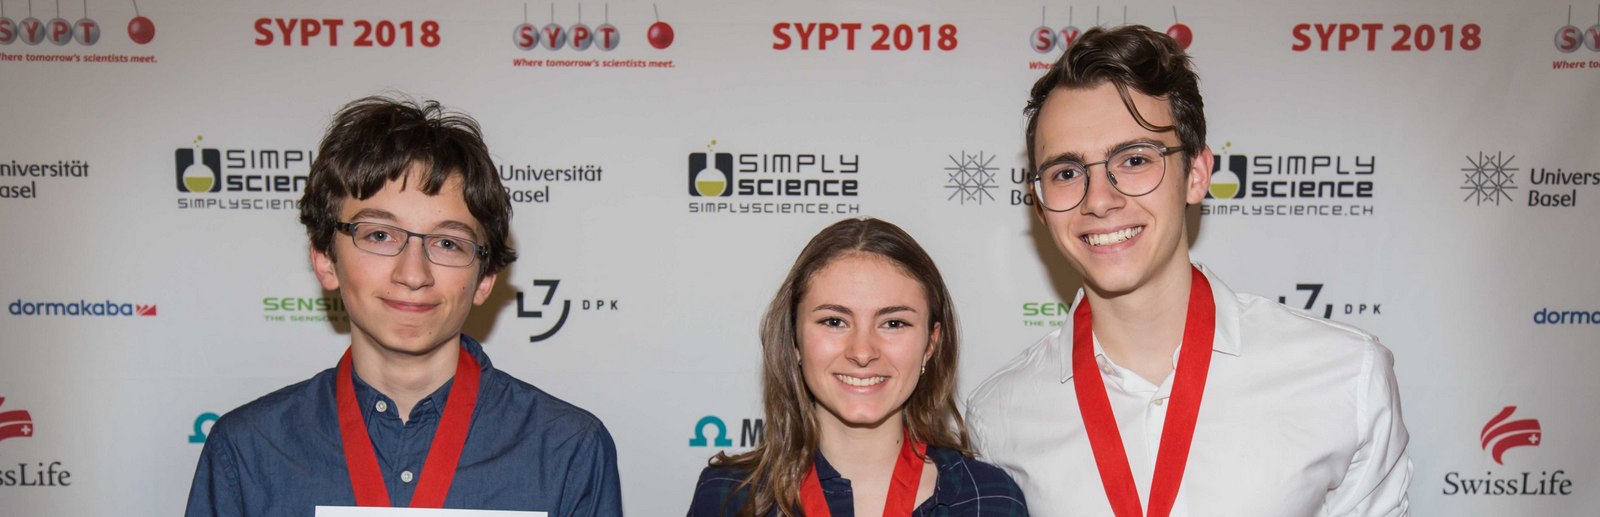 SYPT 2018 - Winners